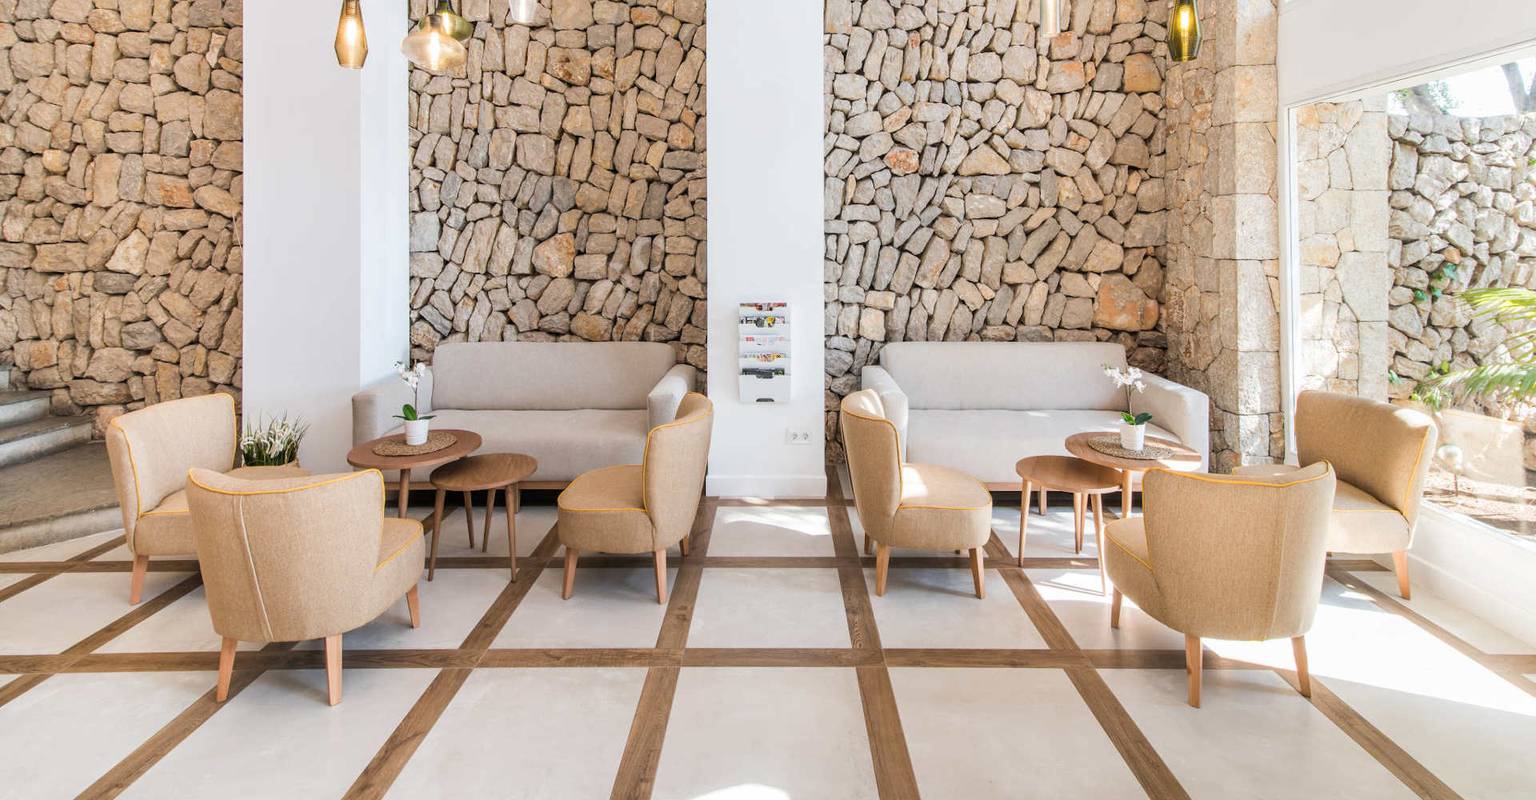 Los detalles marcan la diferencia Hotel Na Taconera Font de Sa Cala, Mallorca